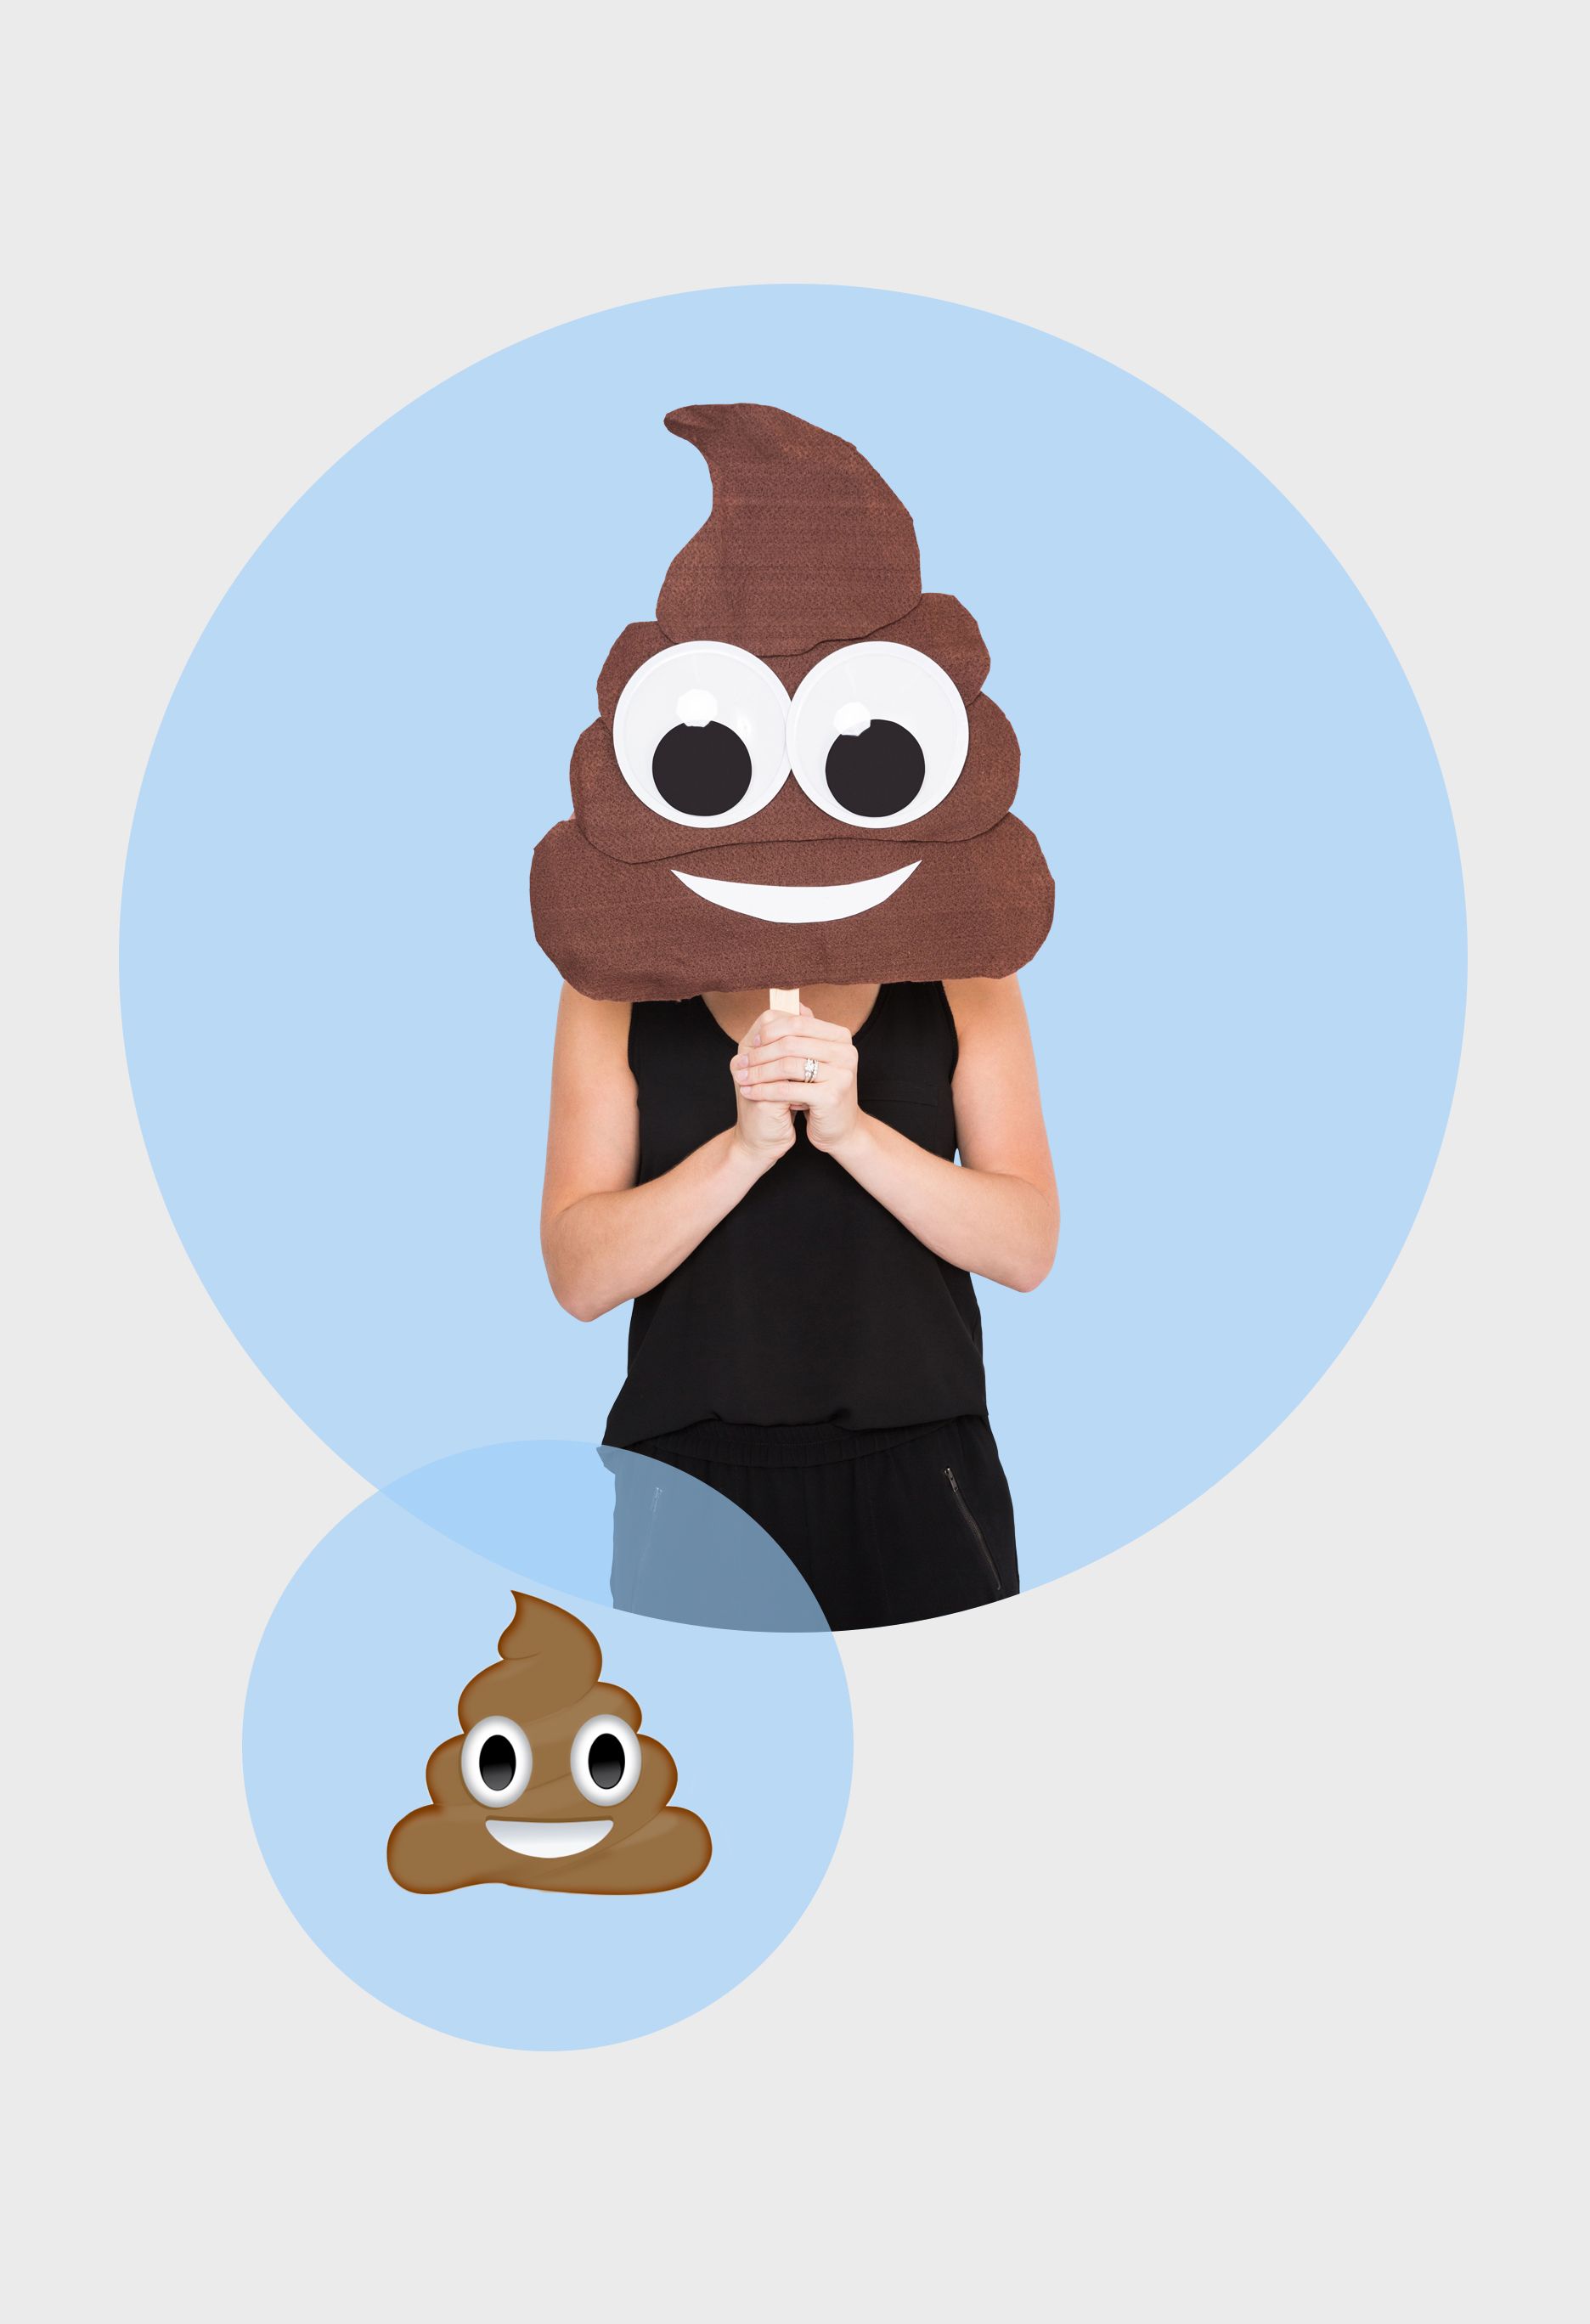 poop emoji costume